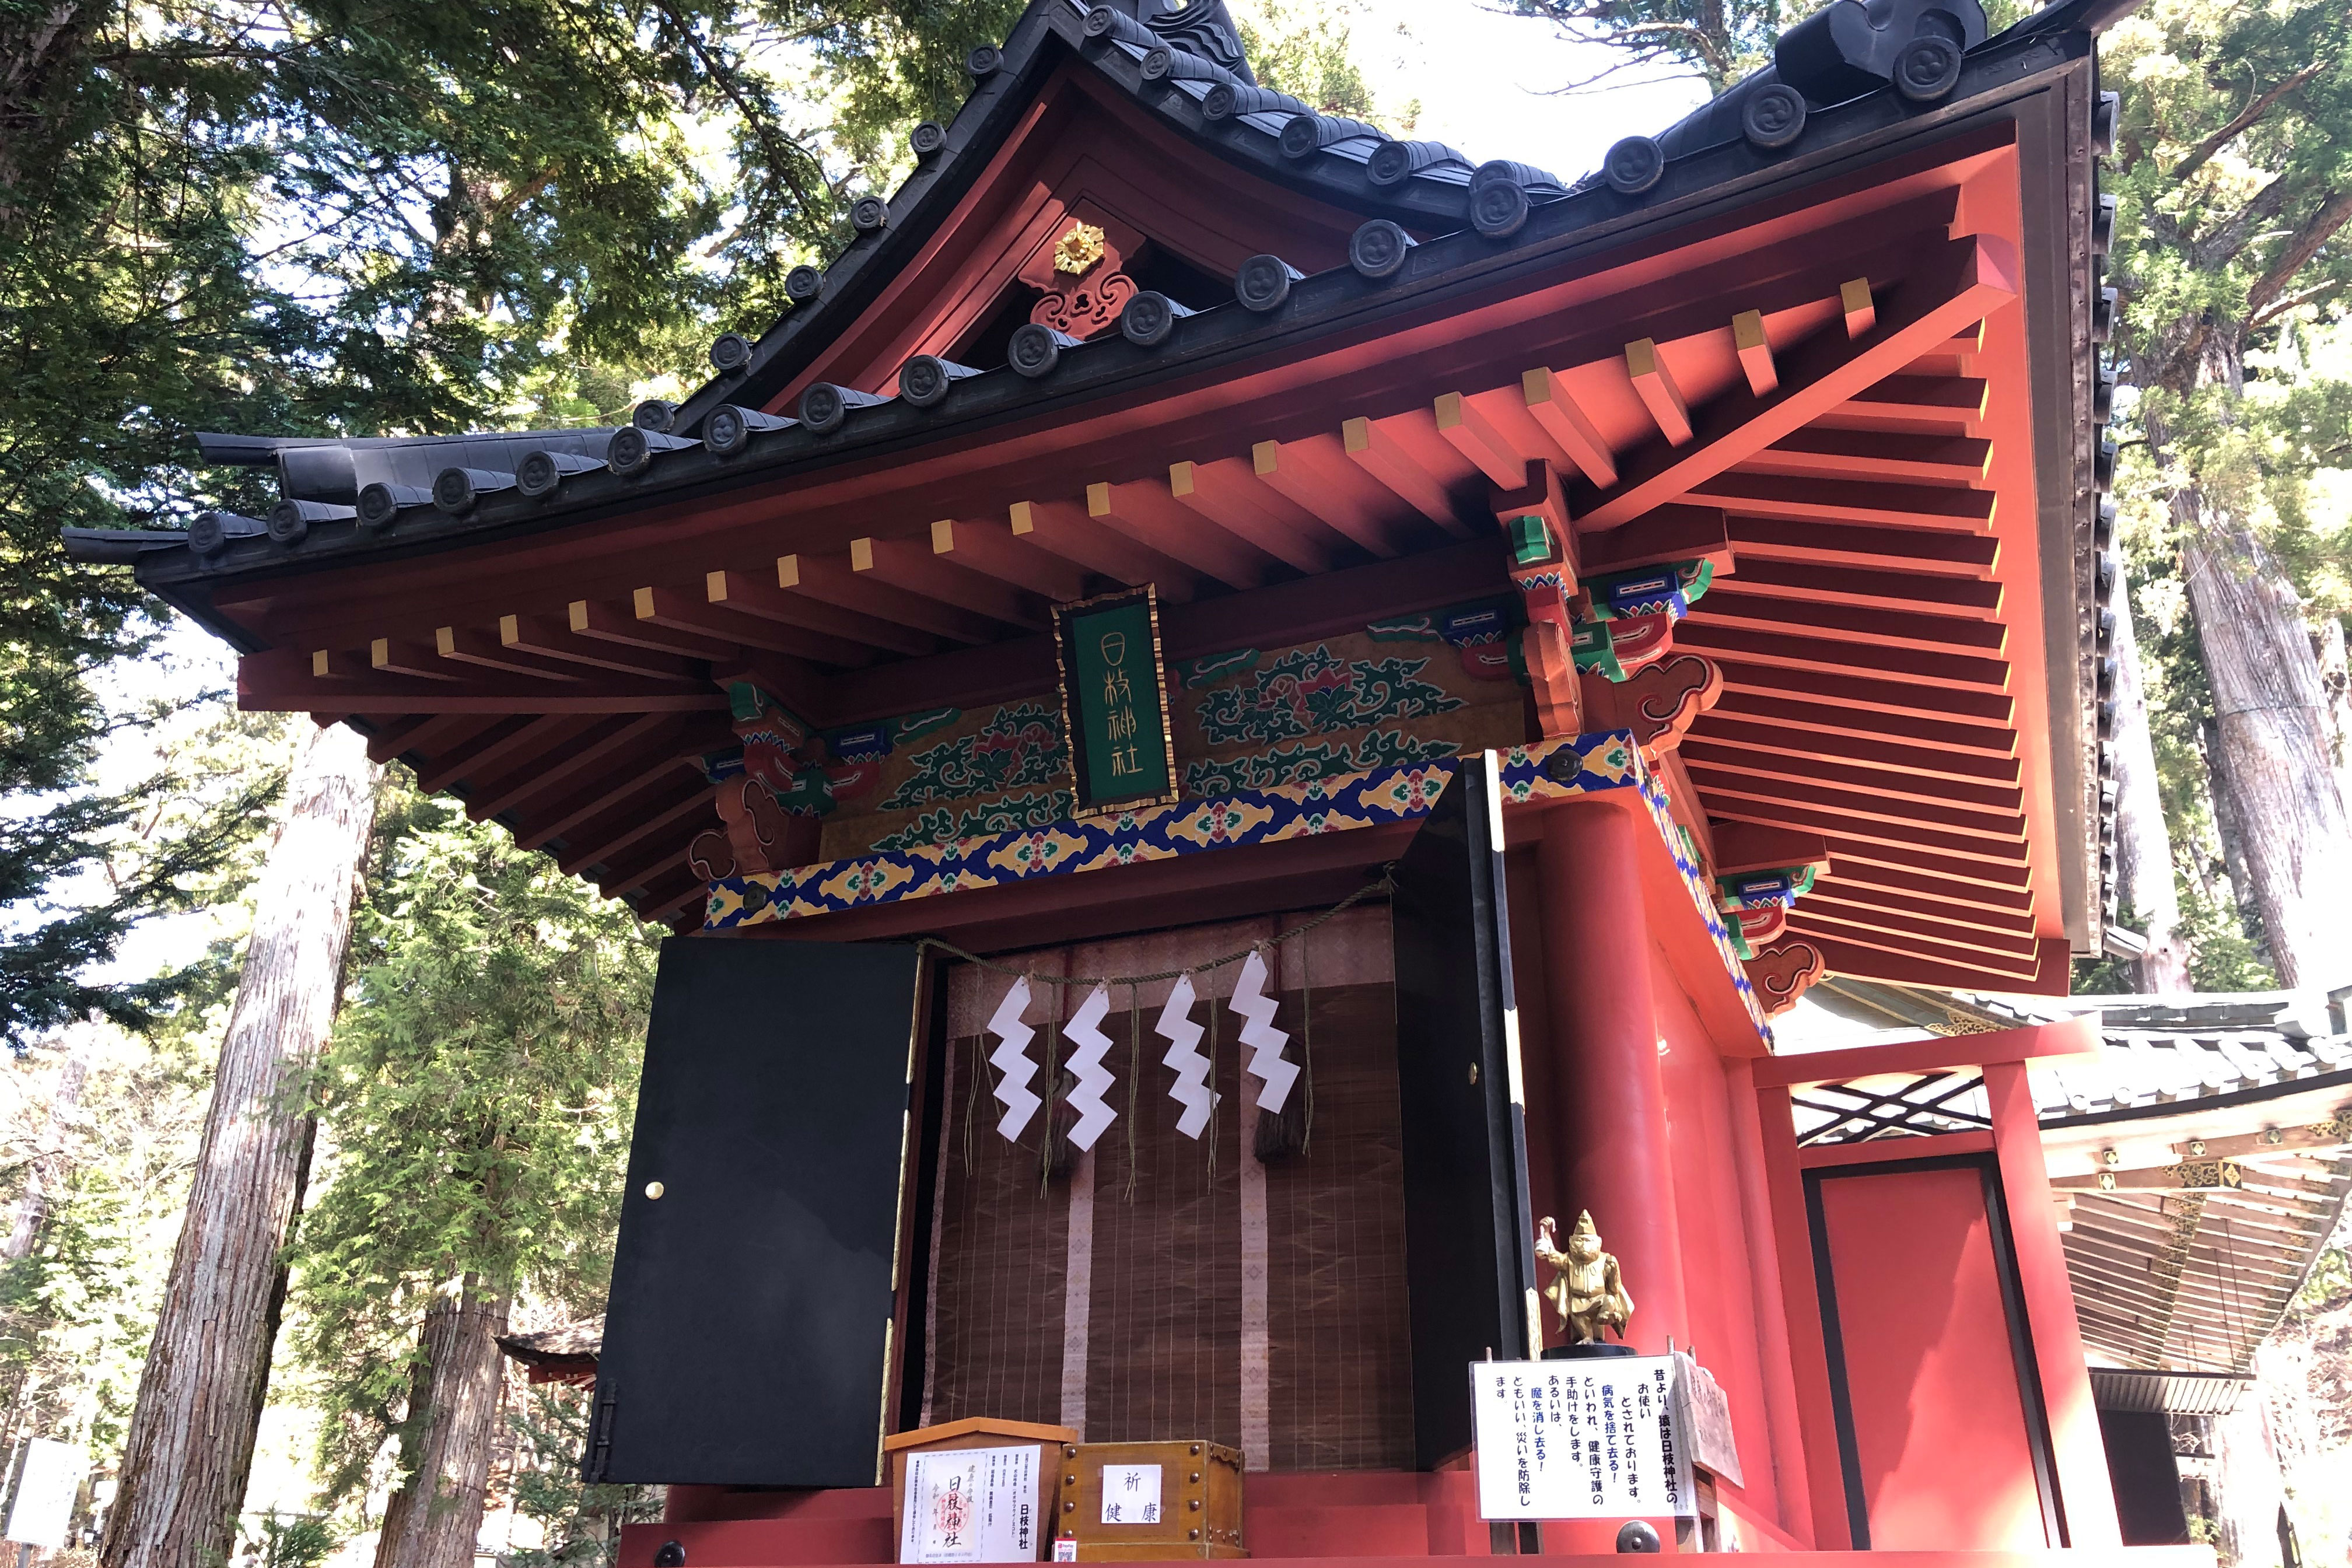 กล่าวกันศาลเจ้าฮิเอะถูกสร้างขึ้นครั้งแรกในปี ค.ศ. 848 ส่วนศาลเจ้าที่เห็นในปัจจุบันนั้นเป็นศาลที่สร้างขึ้นในปี ค.ศ. 1644 ประดิษฐานเทพเจ้าของชินโตชื่อเทพโอยามะคุอิโนะมิโคะโตะซึ่งเป็นเทพเจ้าแห่งภูเขาและสุขภาพที่ดี ในตอนแรกสุดศาลเจ้าถูกสร้างขึ้นโดยพระเอ็นนิน (ค.ศ. 794 - 864) เจ้าอาวาสผู้นำทางศาสนารุ่นที่ 3 ของศาสนาพุทธนิกายเทนไดซึ่งญี่ปุ่นรับมาจากประเทศจีนในศตวรรษที่ 9 วัดรินโนจิของนิกโกก็คือวัดพุทธในนิกายเทนไดเช่นกัน จิตวัญญาณศักดิ์สิทธิ์ของเทพเจ้าโอยามะคุอิโนะมิโคะโตะที่ประดิษฐานอยู่ ณ ศาลเจ้าแห่งนี้อัญเชิญมาจากศาลเจ้าฮิเอในวัดเอ็นเรียวคุจิแห่งเขาฮิเอที่อยู่ใกล้เกียวโตและเป็นวัดศูนย์กลางของนิกายเทนไดของญี่ปุ่น ที่นี่ถือได้ว่าเป็นอนุสรณ์แห่งการหลอมรวมศาสนาพุทธกับศาสนาชินโตเข้าด้วยกันก่อนสมัยเมจิ (ค.ศ. 1868 - 1912) การหลอมรวมเข้าด้วยกันทางศาสนานี้มีศาสนาพุทธนิกายเทนไดเป็นผู้บุกเบิก